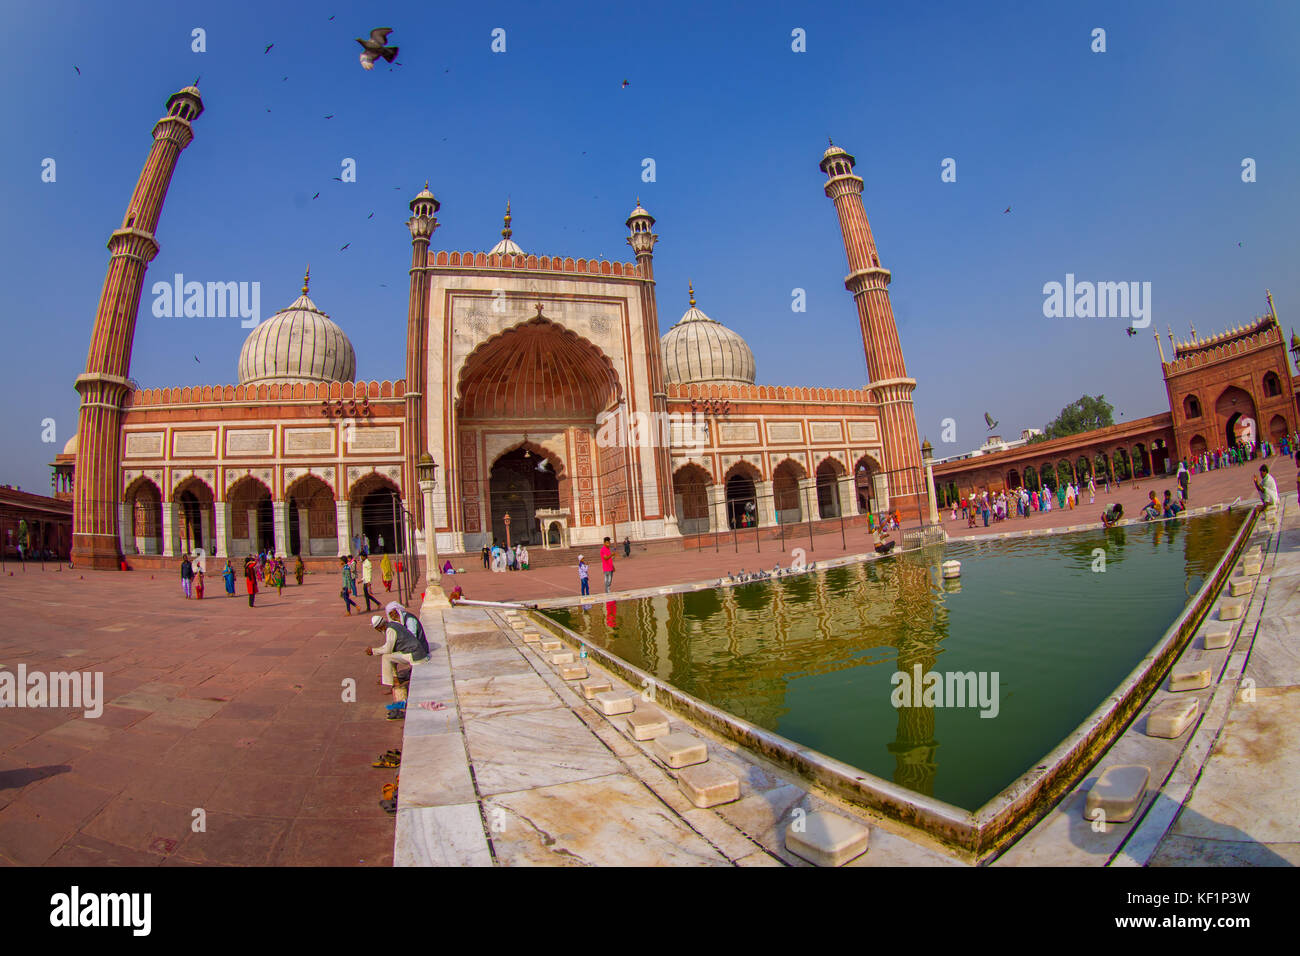 Delhi, Inde - le 27 septembre 2017 : des personnes non identifiées, autour de de l'étang artificiel en face d'un merveilleux temple Jama Masjid, avec un oiseaux qui survolent le temple, c'est la plus grande mosquée musulmane à Delhi, Inde, effet oeil de poisson Banque D'Images